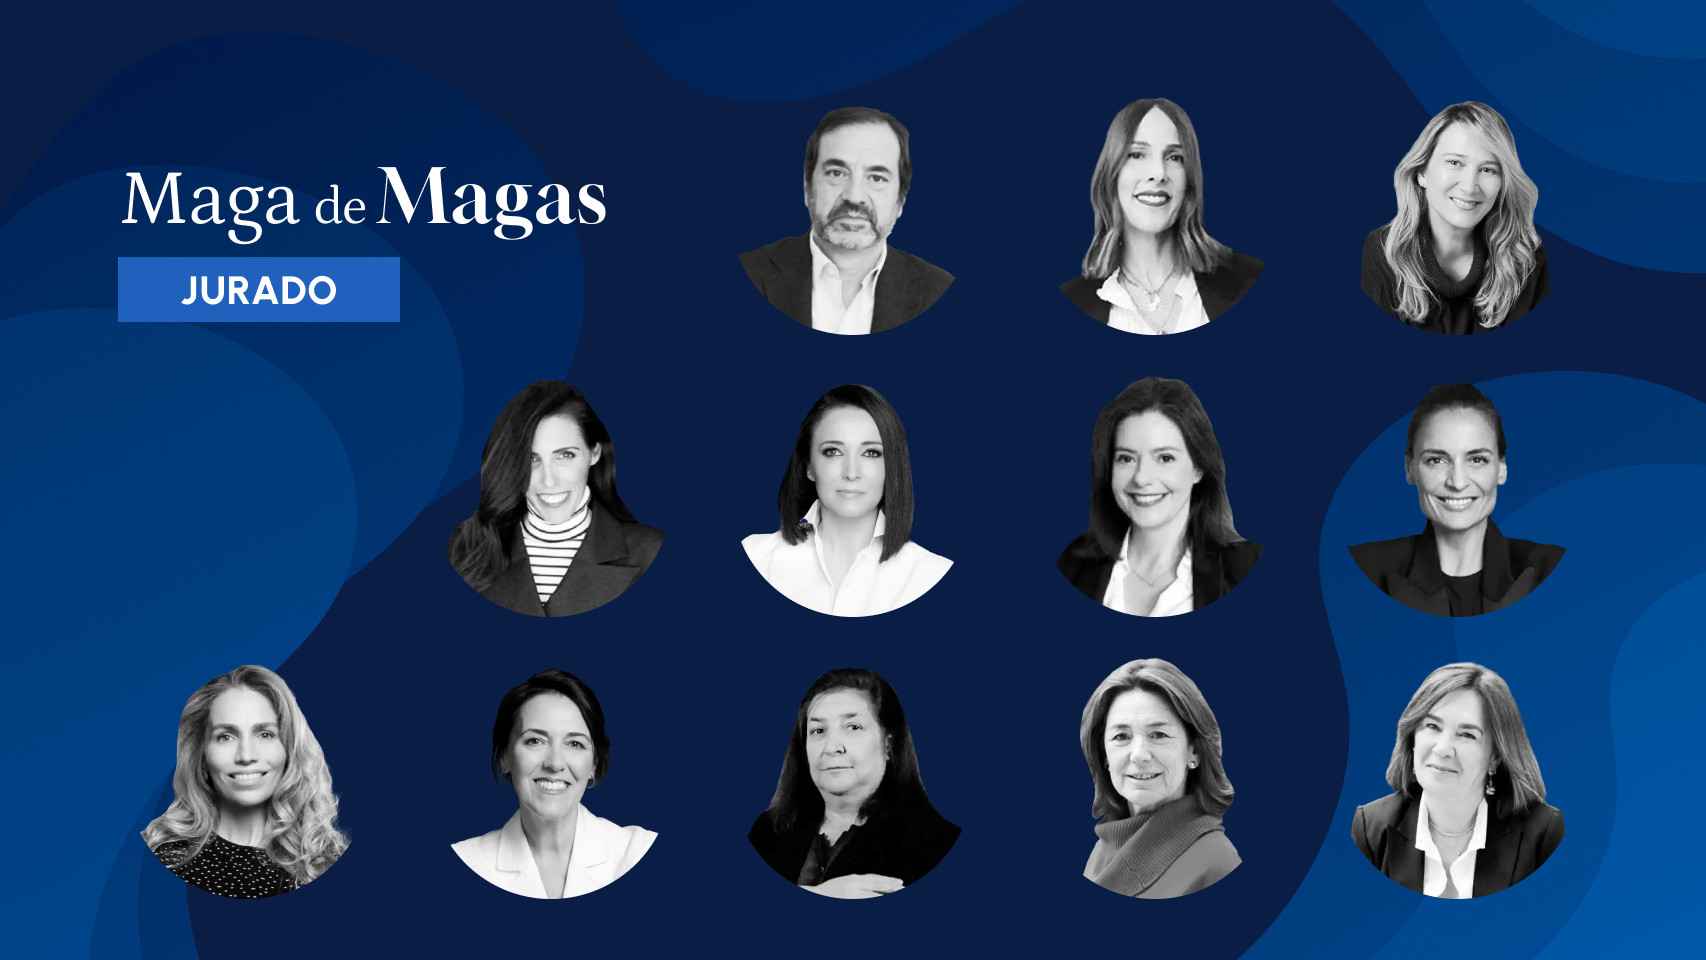 12 personajes destacados en el mundo de la literatura y la comunicación: quién es quién en el jurado de los Premios Maga de Magas